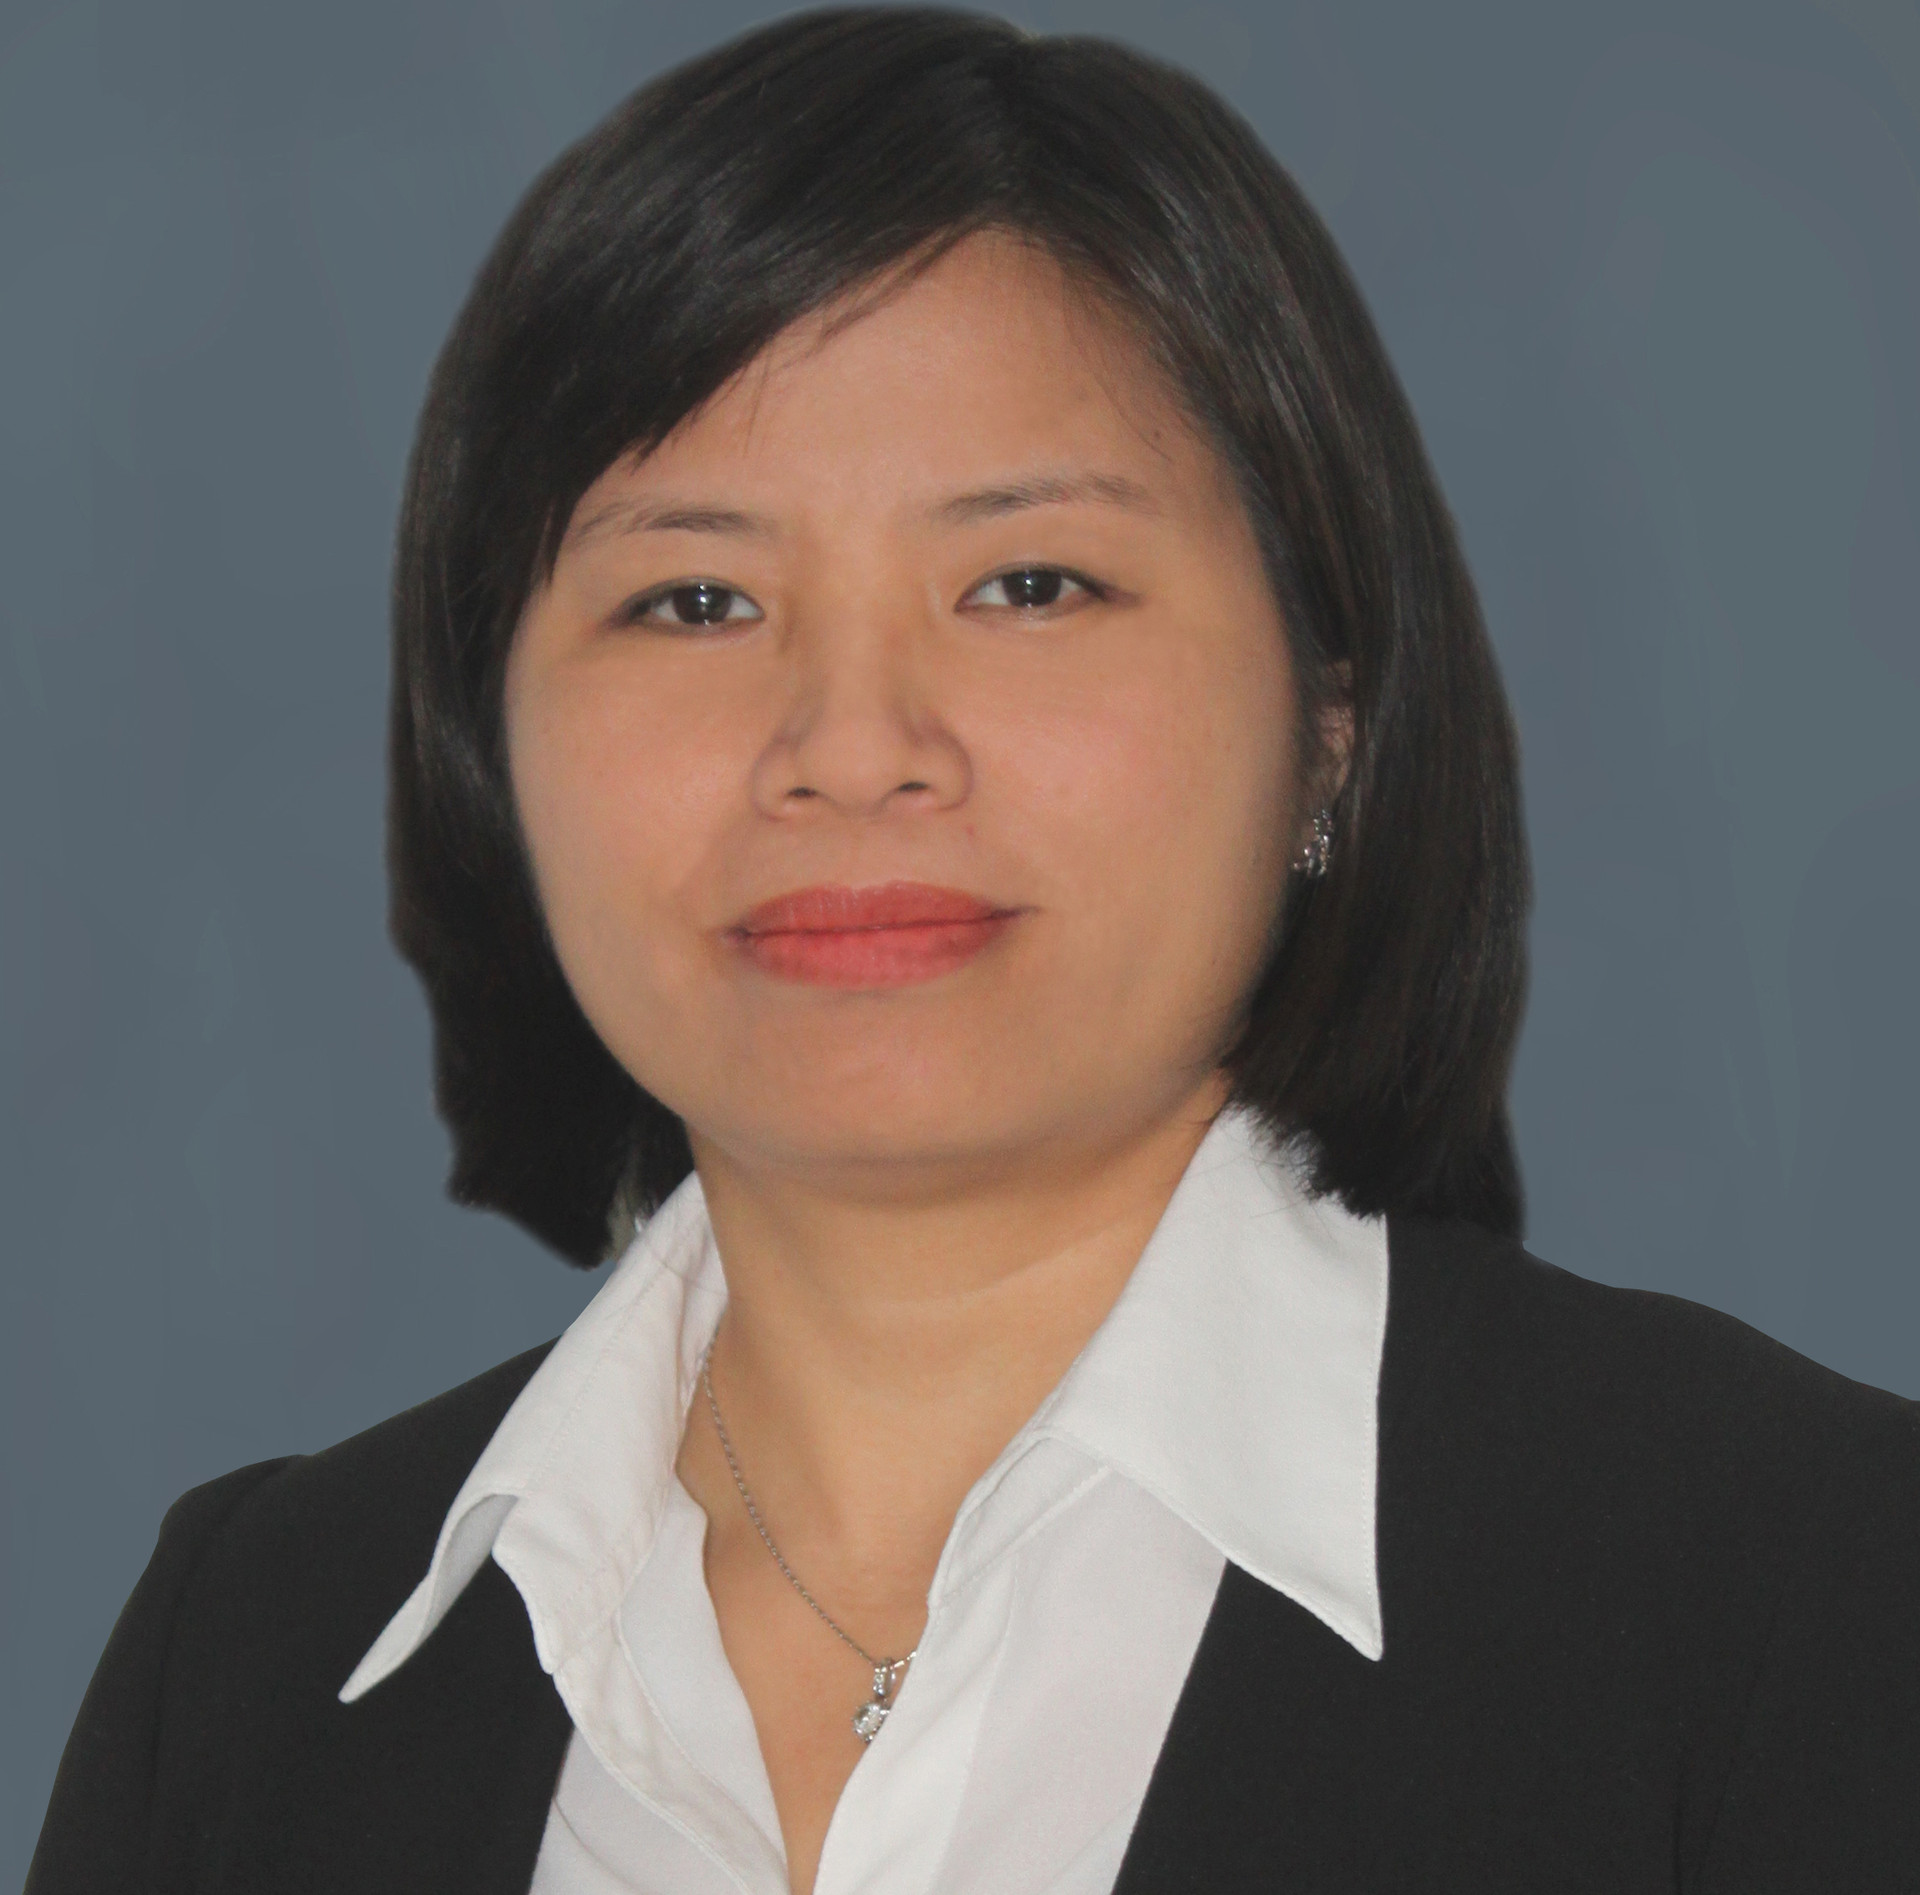 Bà Vương Thị Huyền – Giám đốc Khách hàng Doanh nghiệp VIB: “Sáng tạo hạ tầng tài chính để hỗ trợ doanh nghiệp”